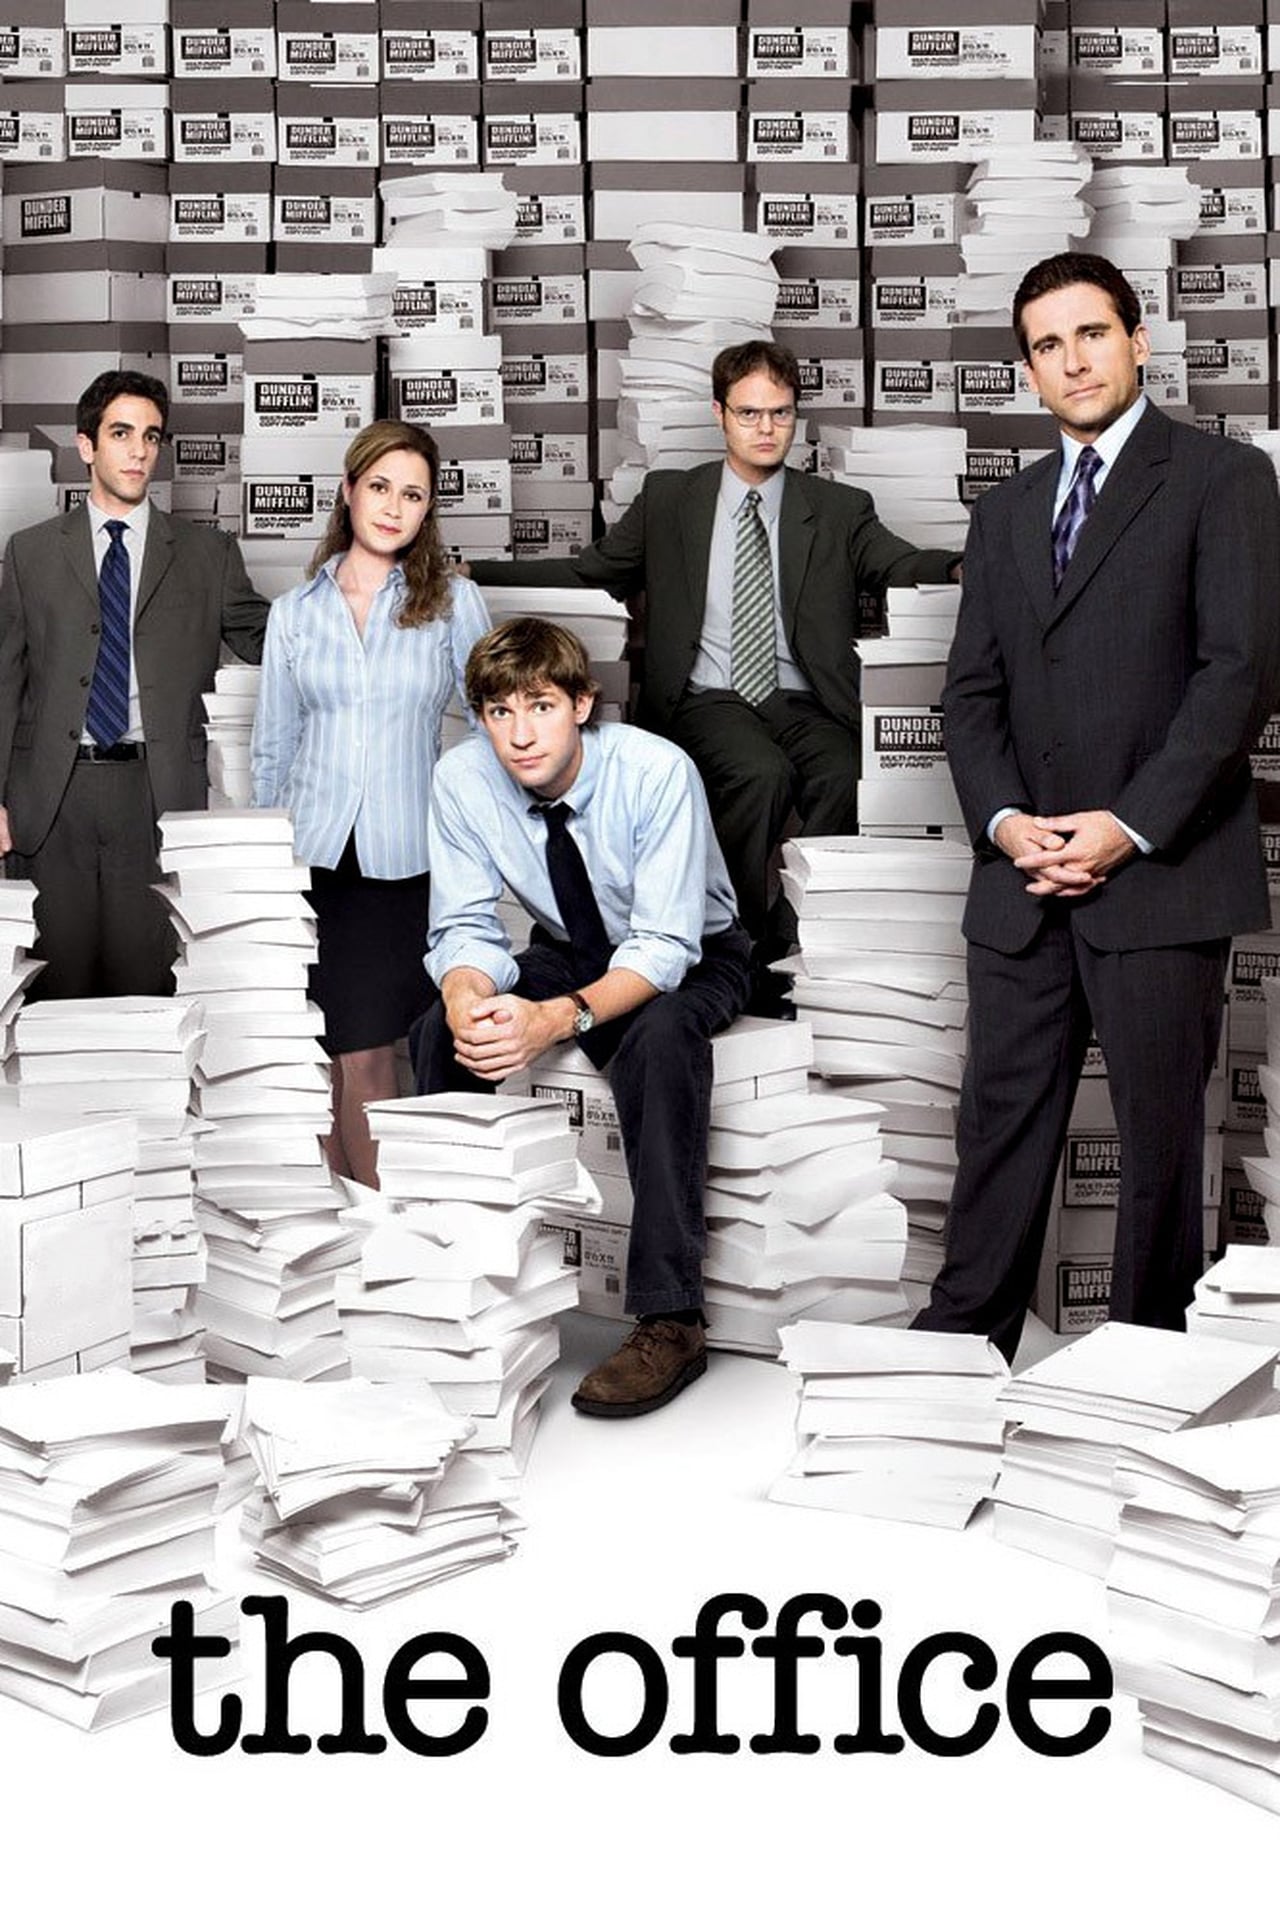 The Office (US) Season 7